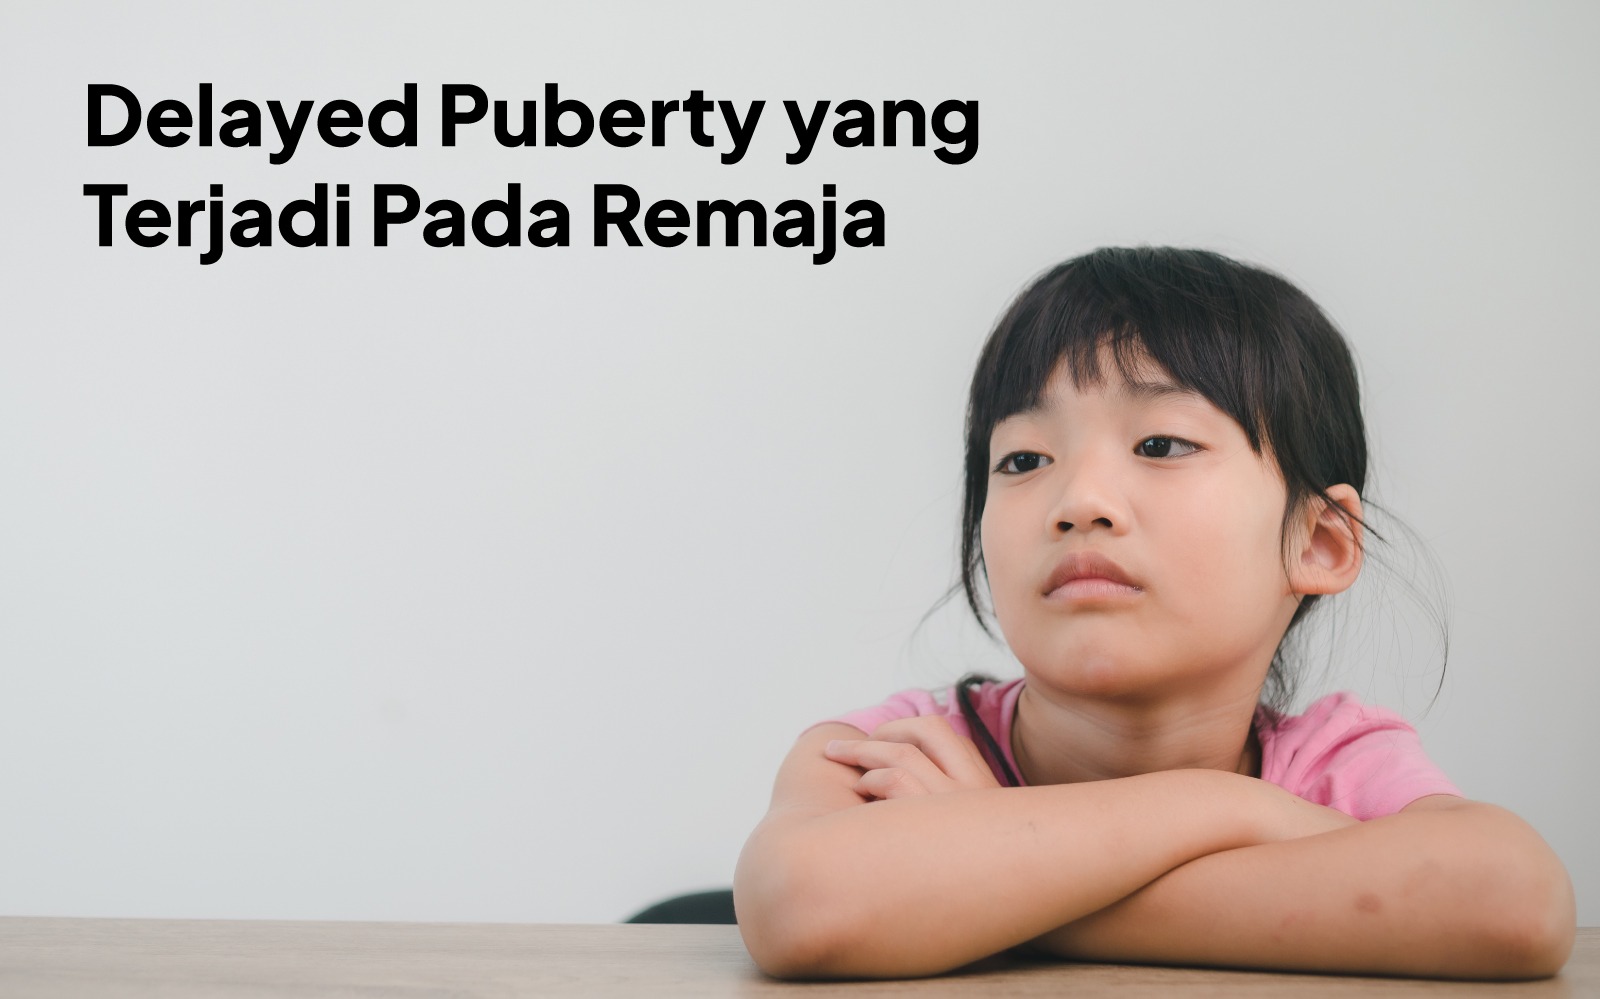 Delayed Puberty yang Terjadi pada Remaja